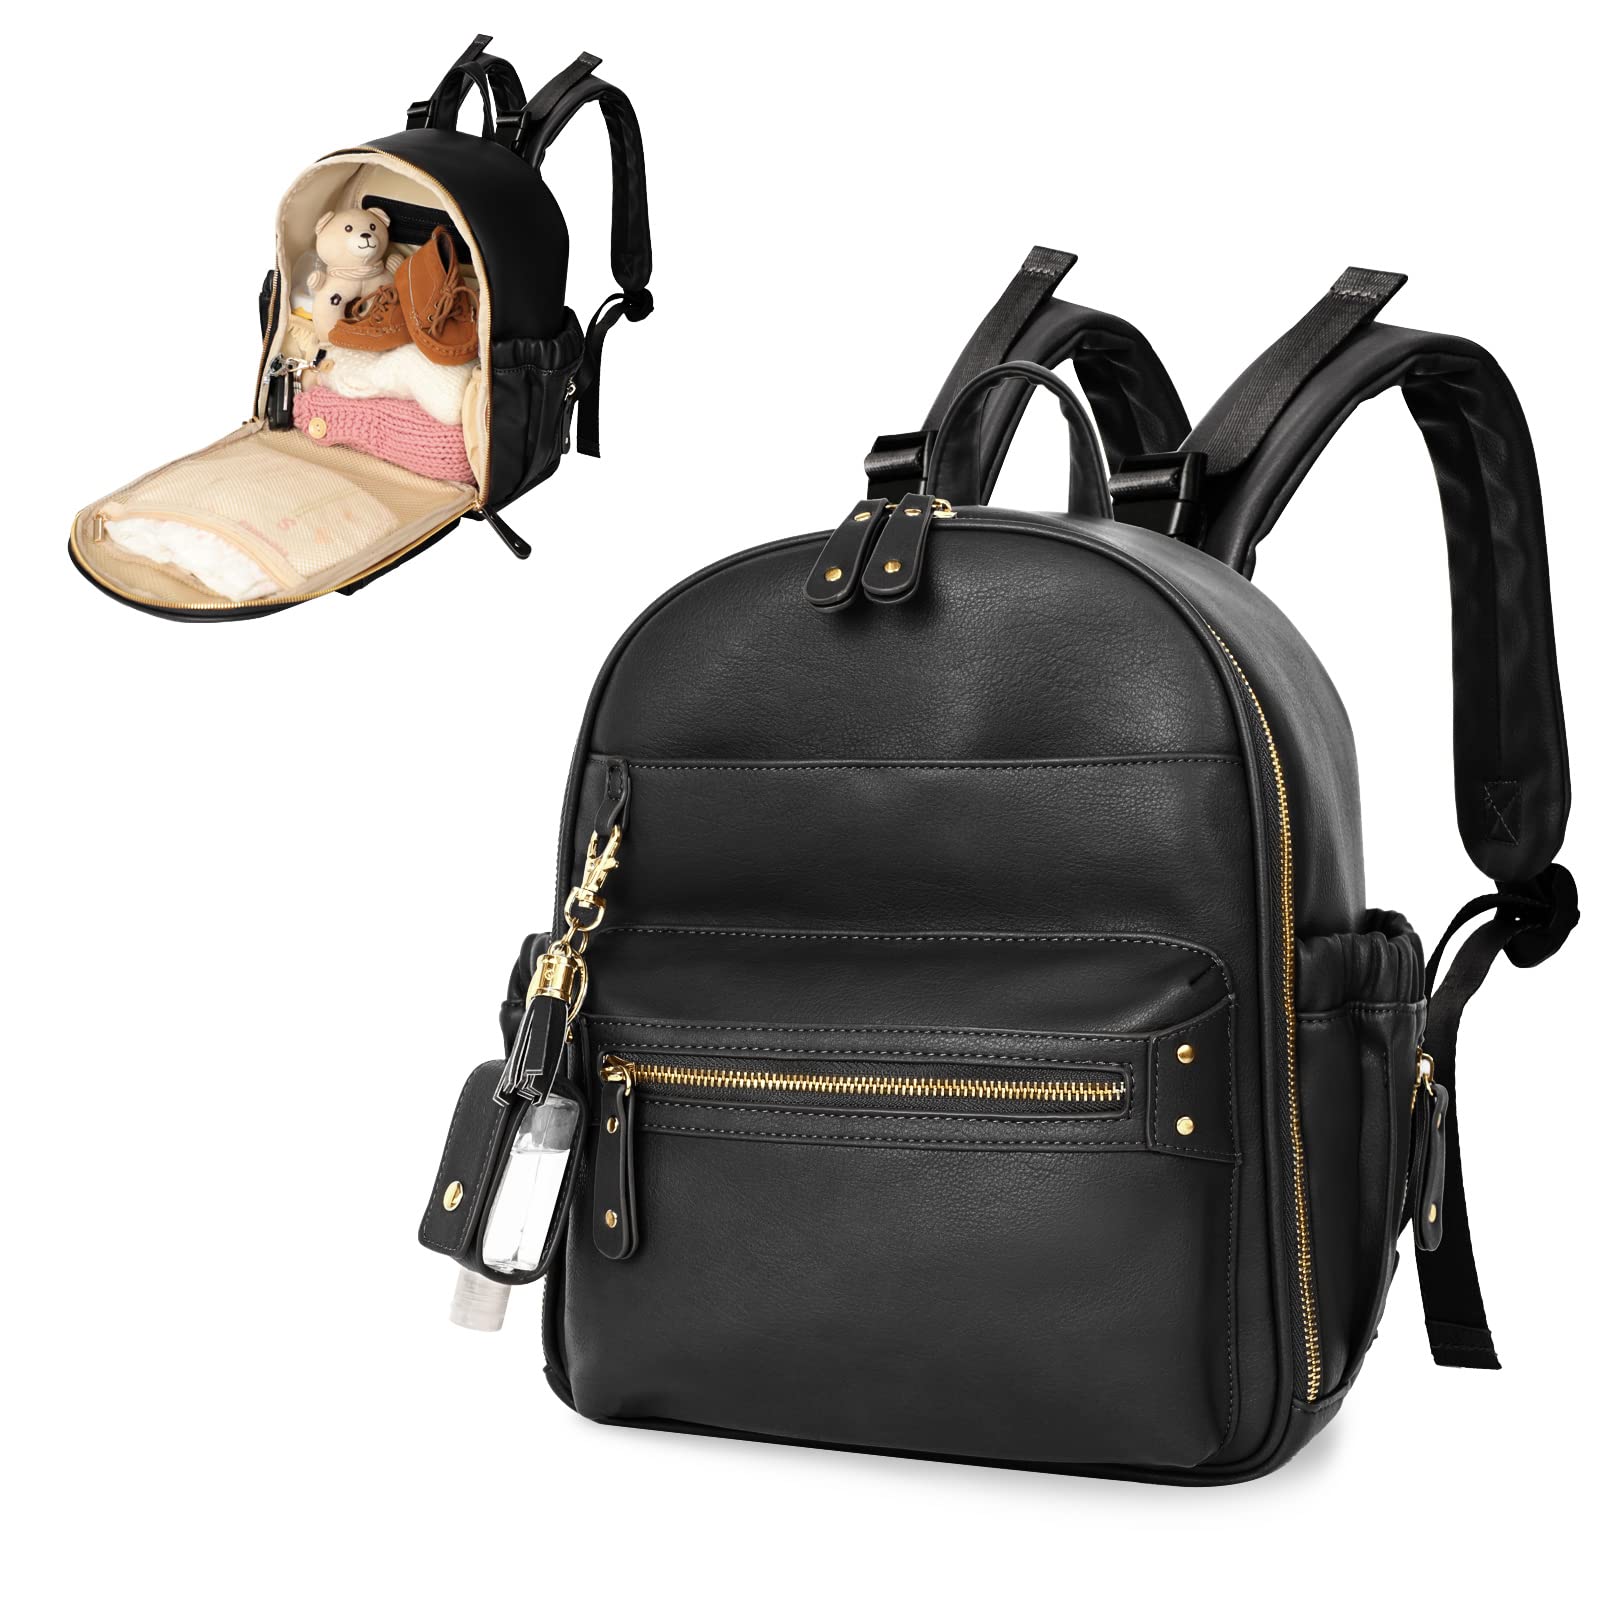 miss fong Diaper Bag Tote Baby Bag Leather Diaper Bag Backpack With Mini Diaper bag